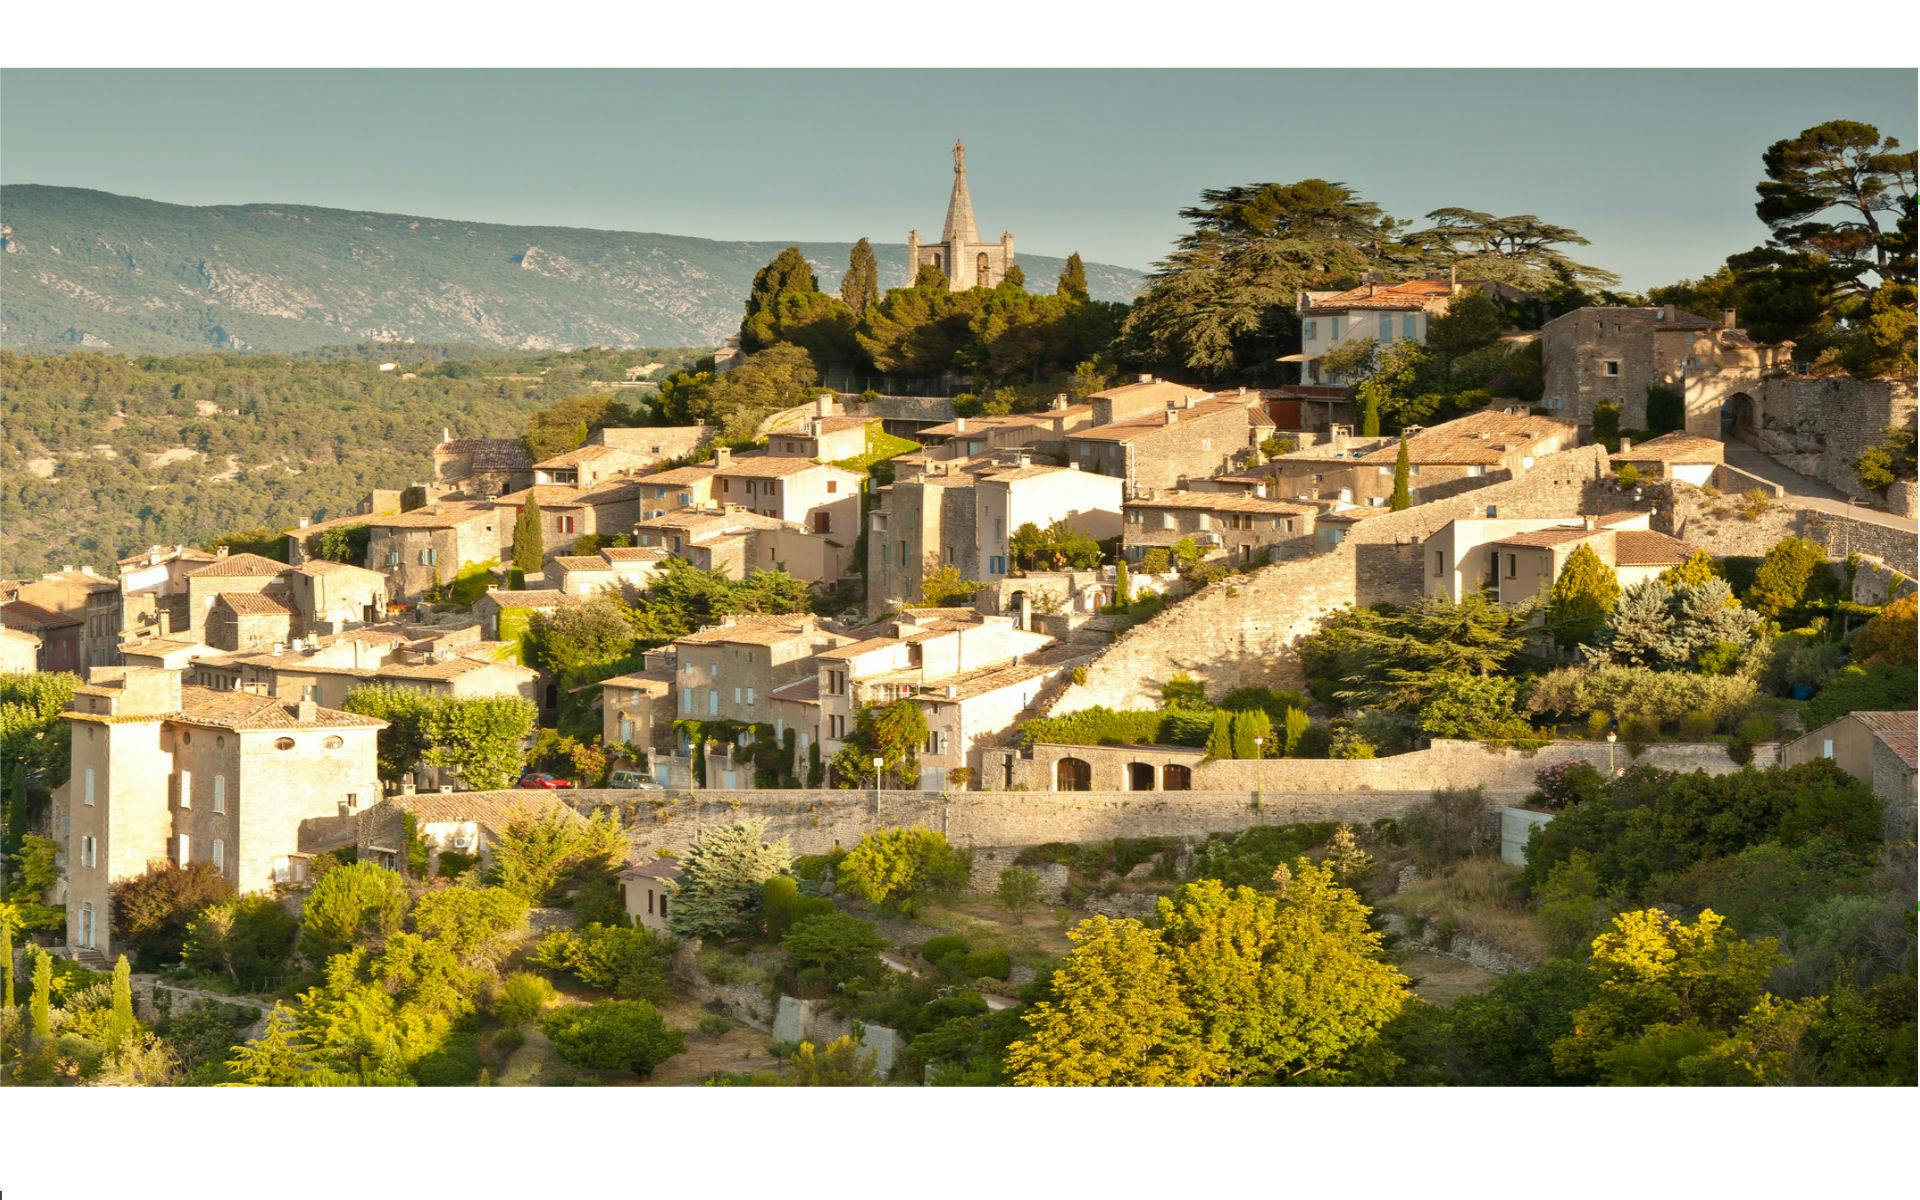 Tour di mezza giornata nei villaggi collinari del Luberon da Aix en Provence